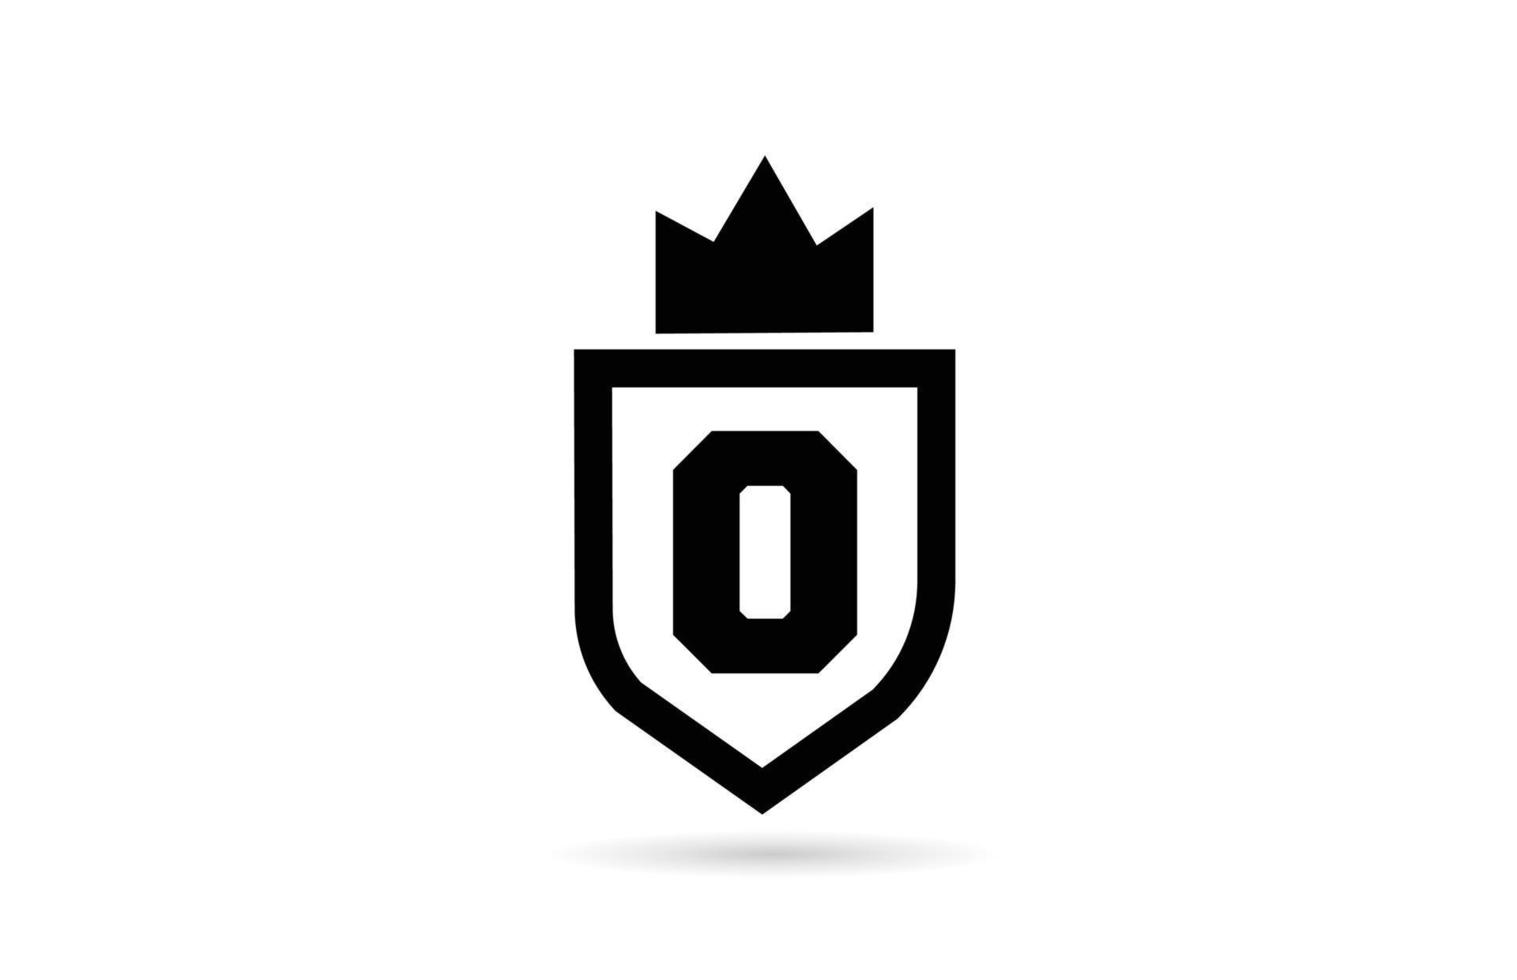 zwart-wit o alfabet letter pictogram logo met schild en koning kroon ontwerp. creatieve sjabloon voor zaken en bedrijf vector